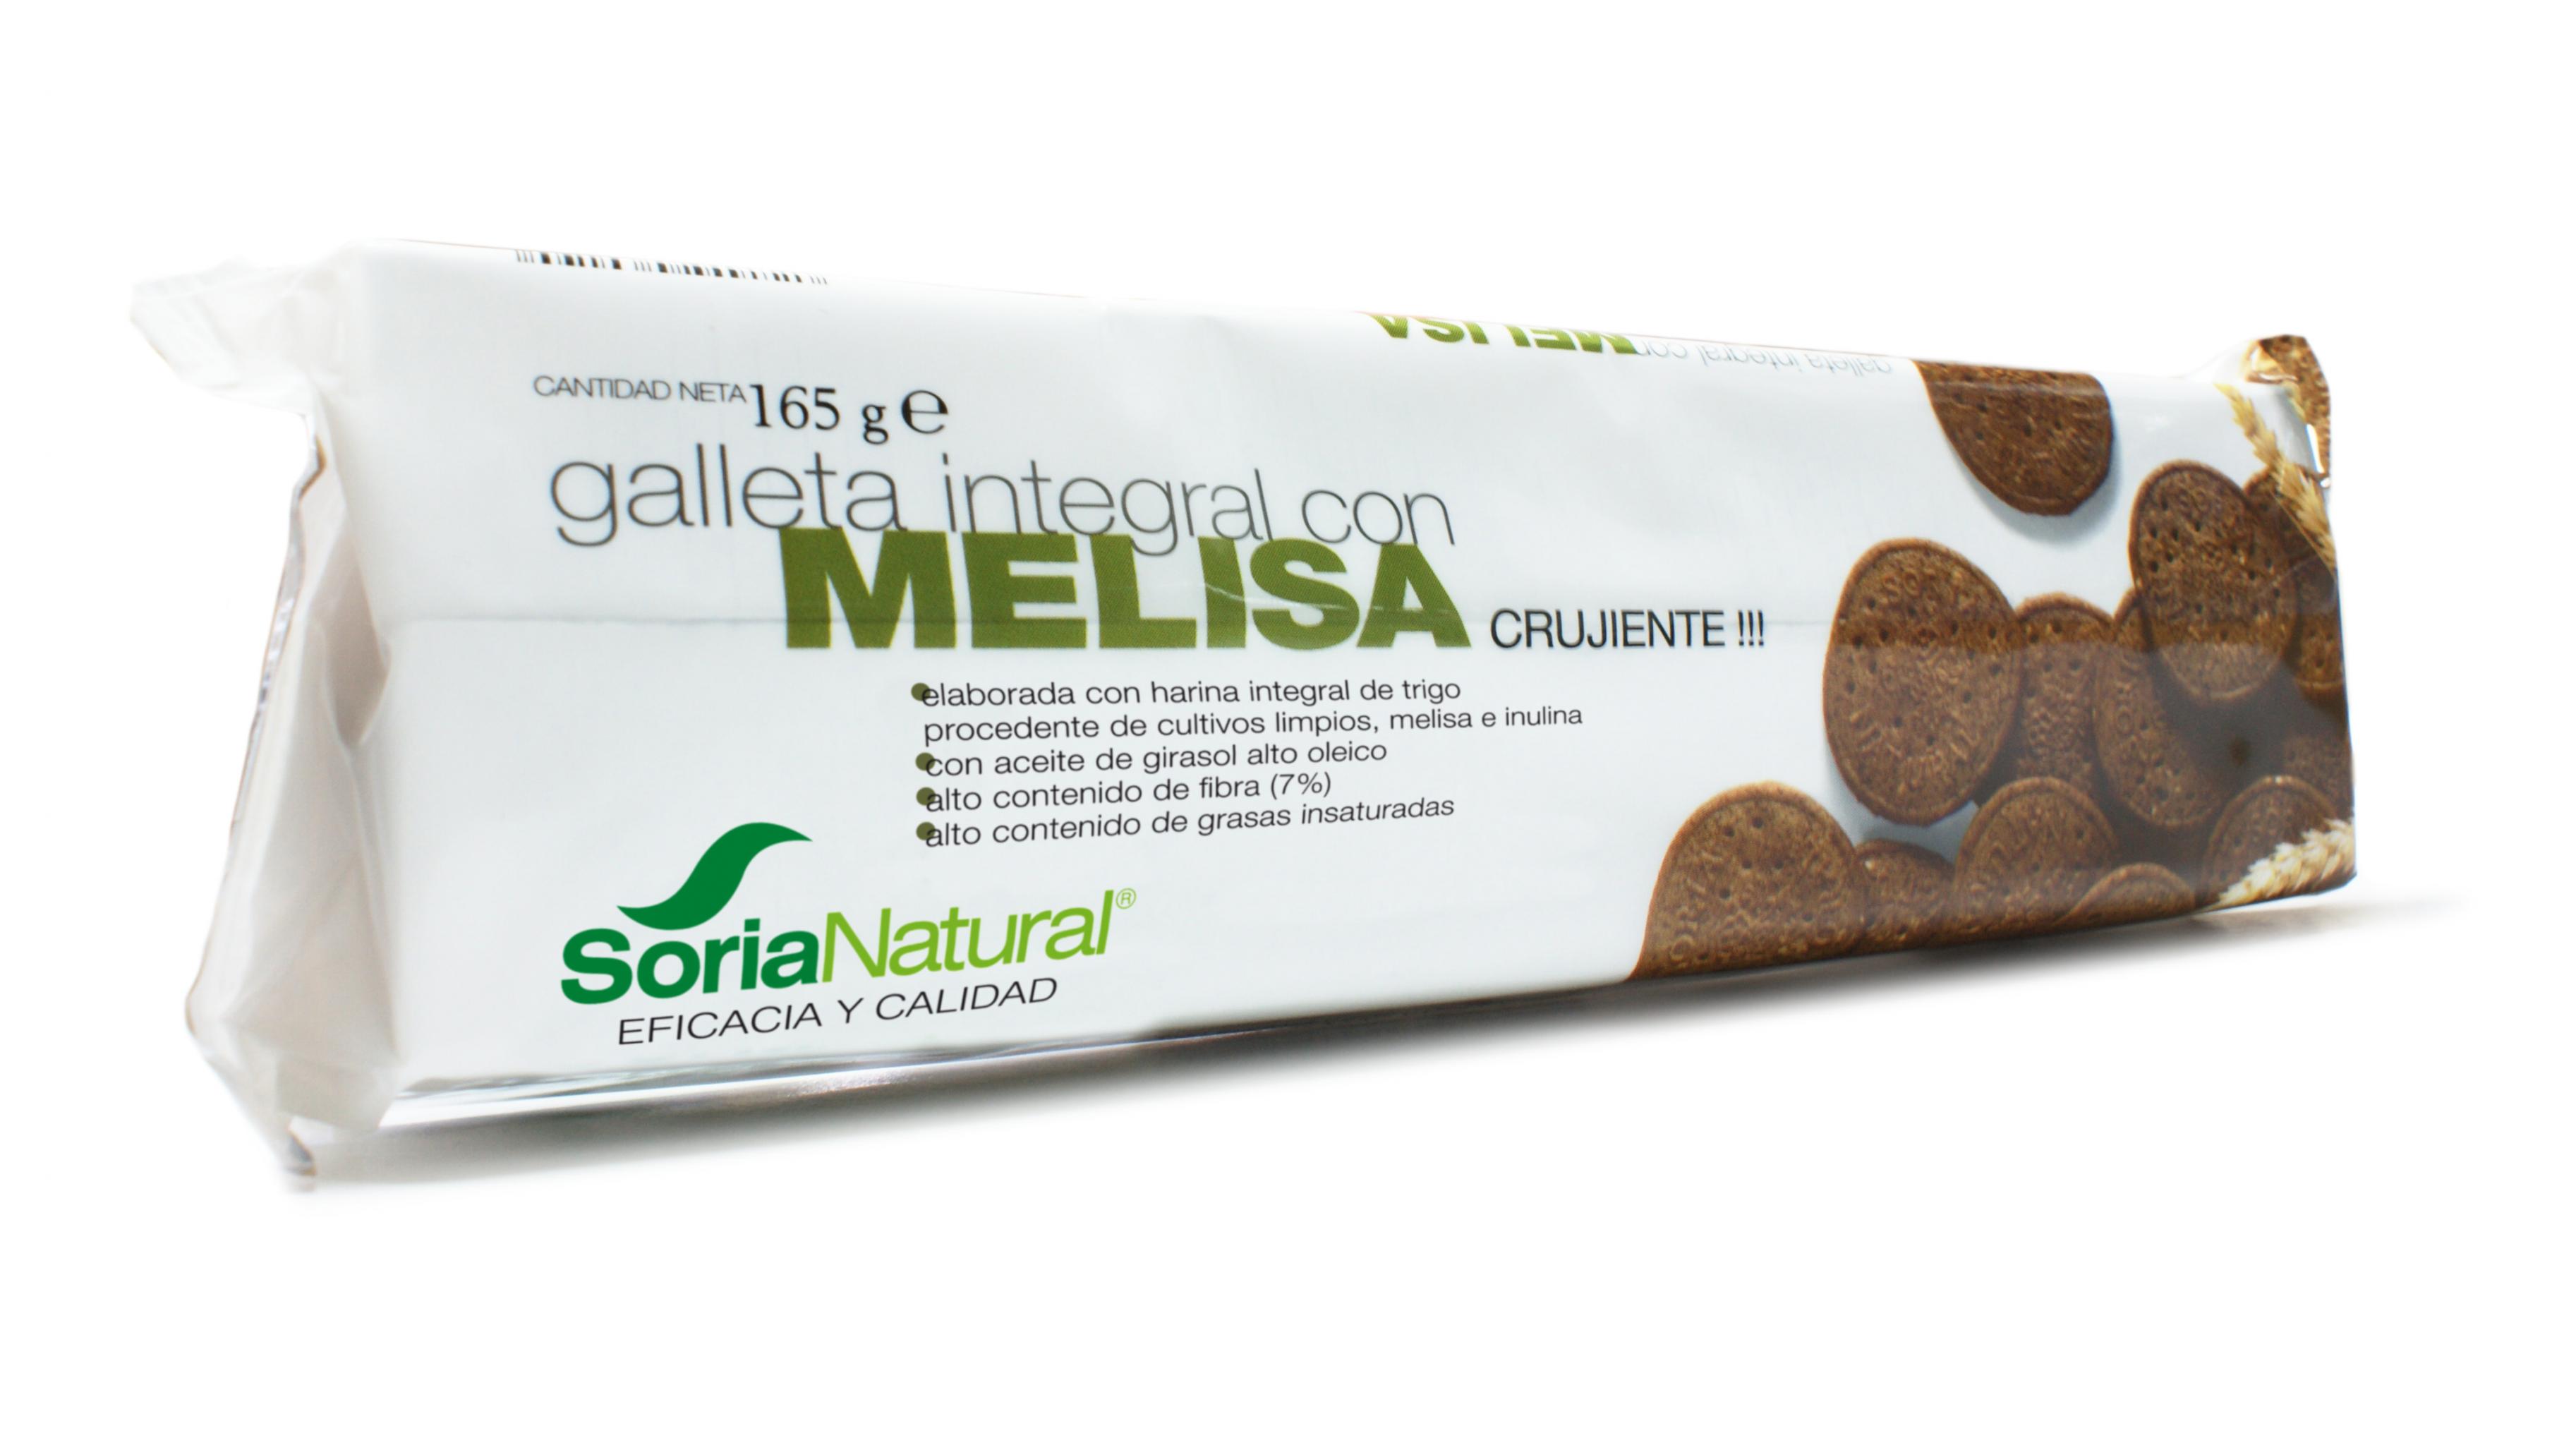 galleta-integral-melisa-soria-natural.jpg